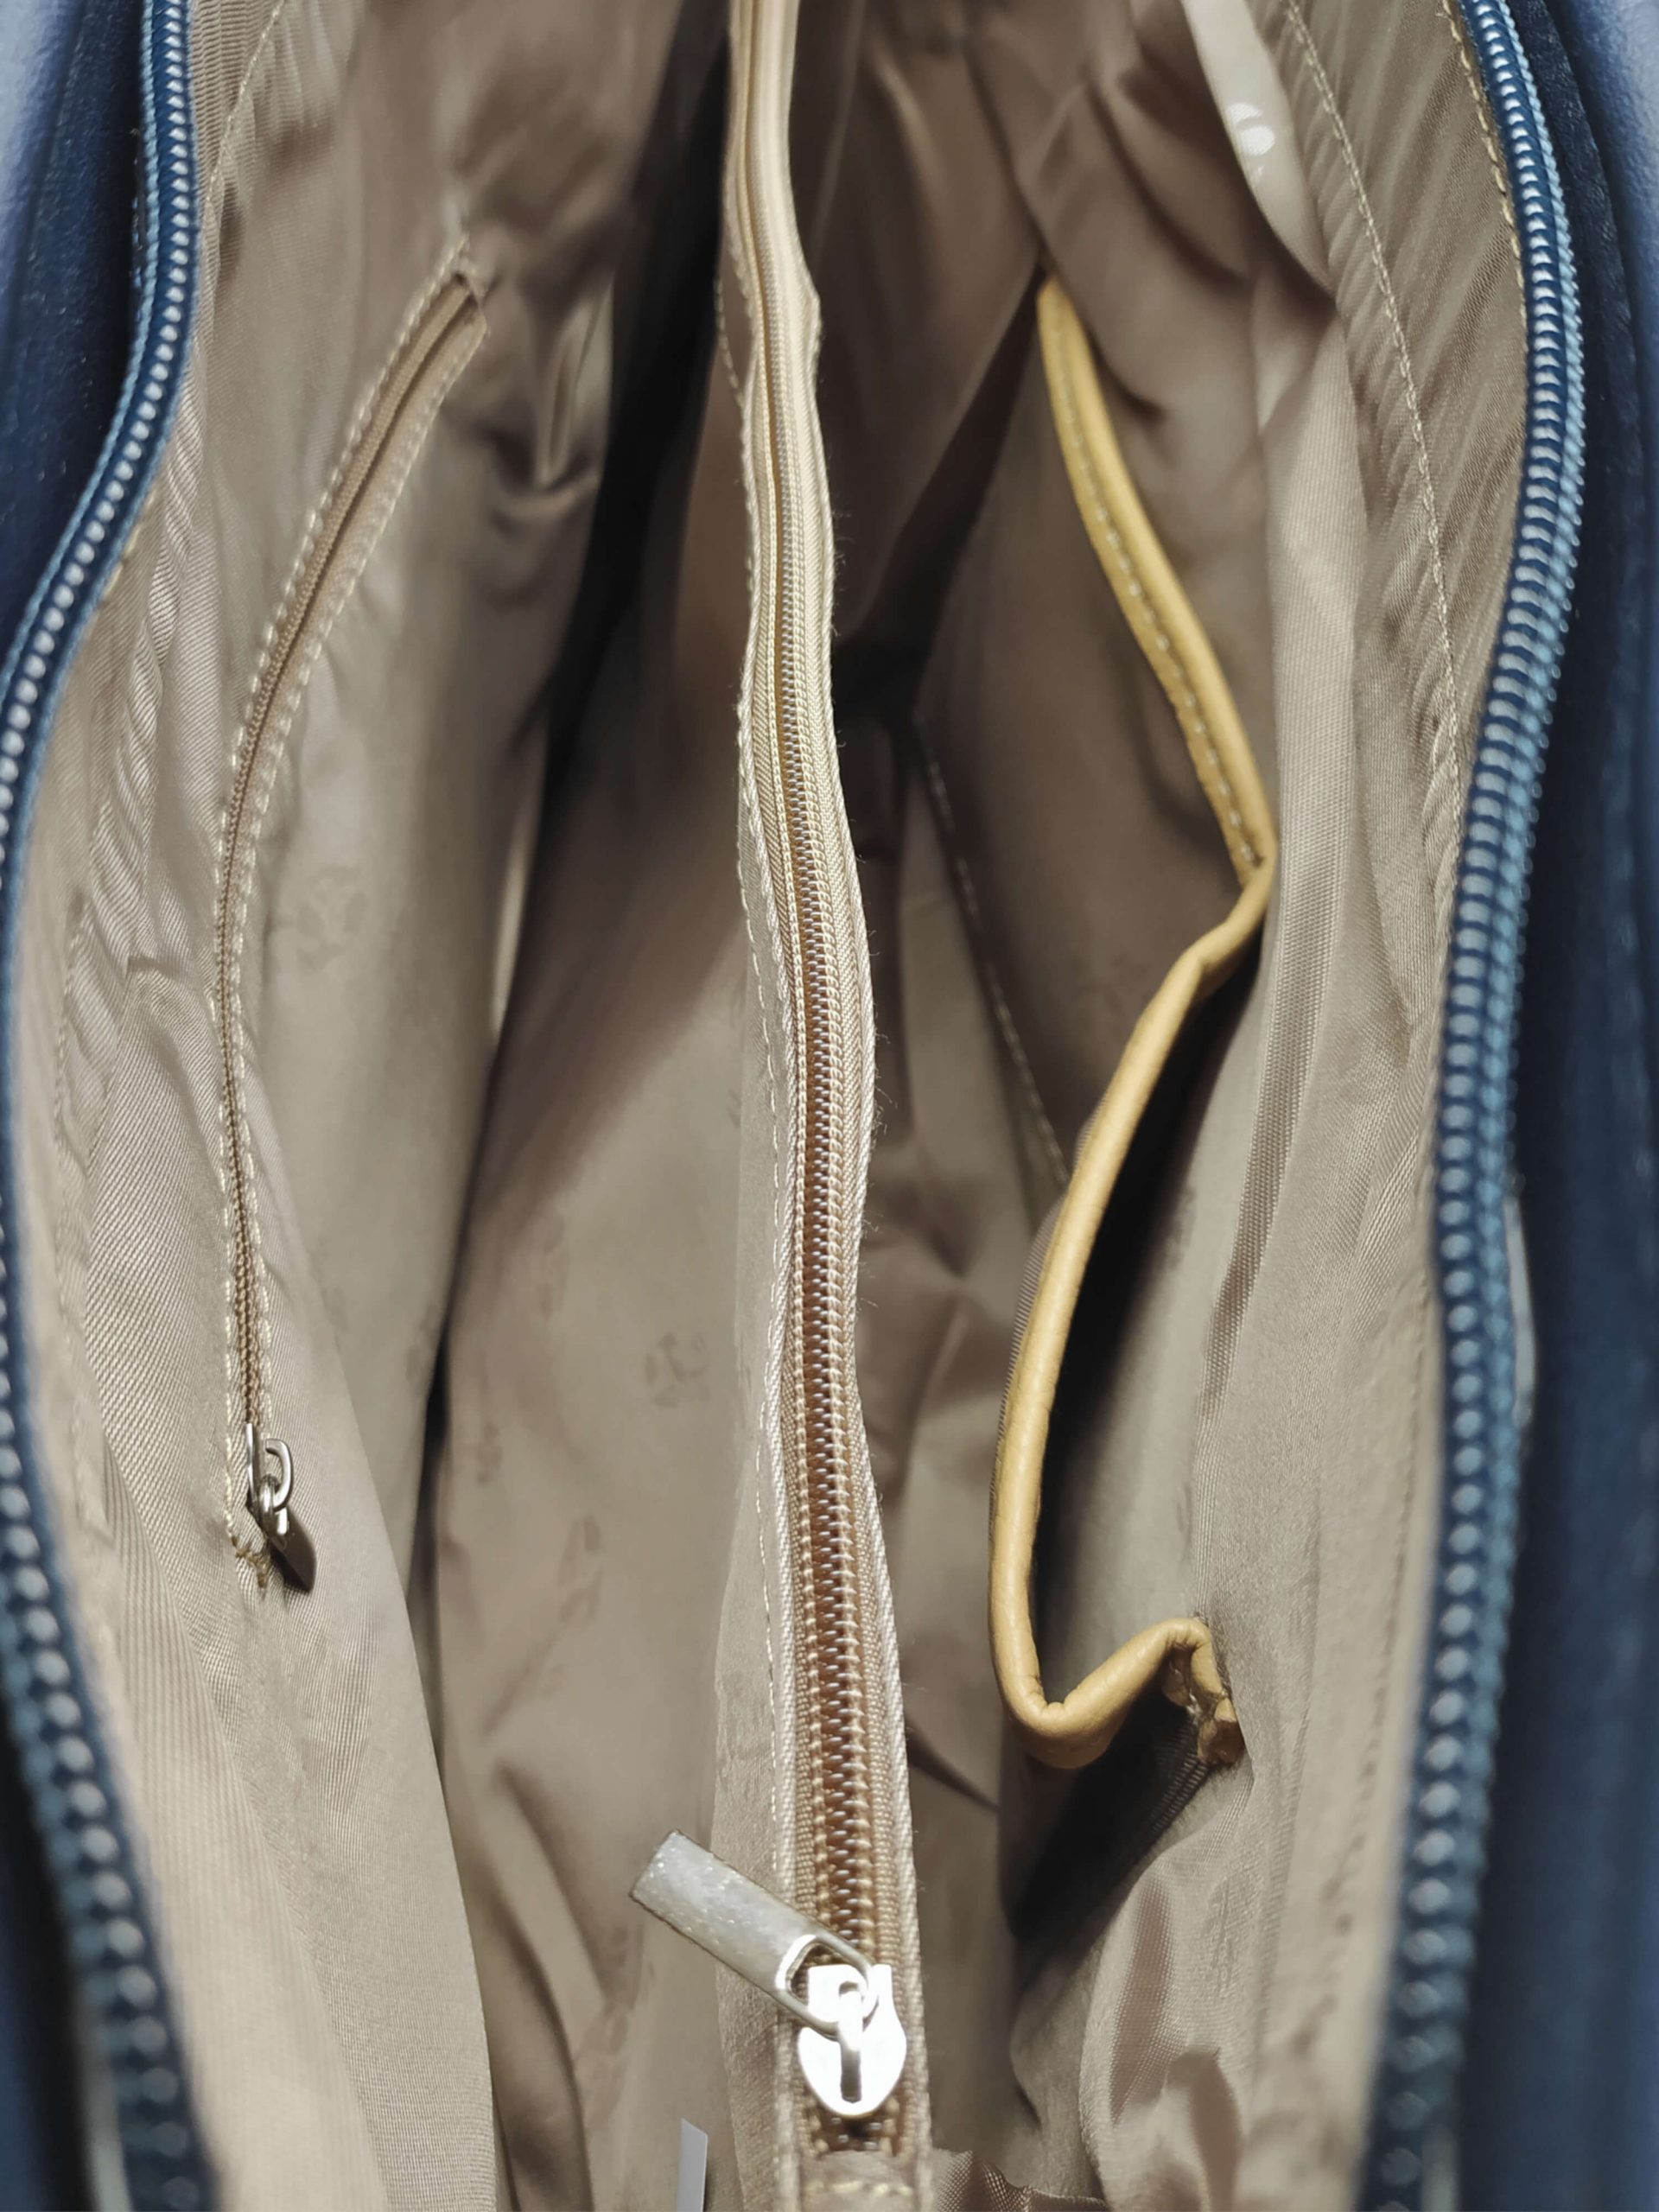 Tmavě modrá dámská kabelka přes rameno se vzory, Tapple, H22505, vnitřní uspořádání kabelky